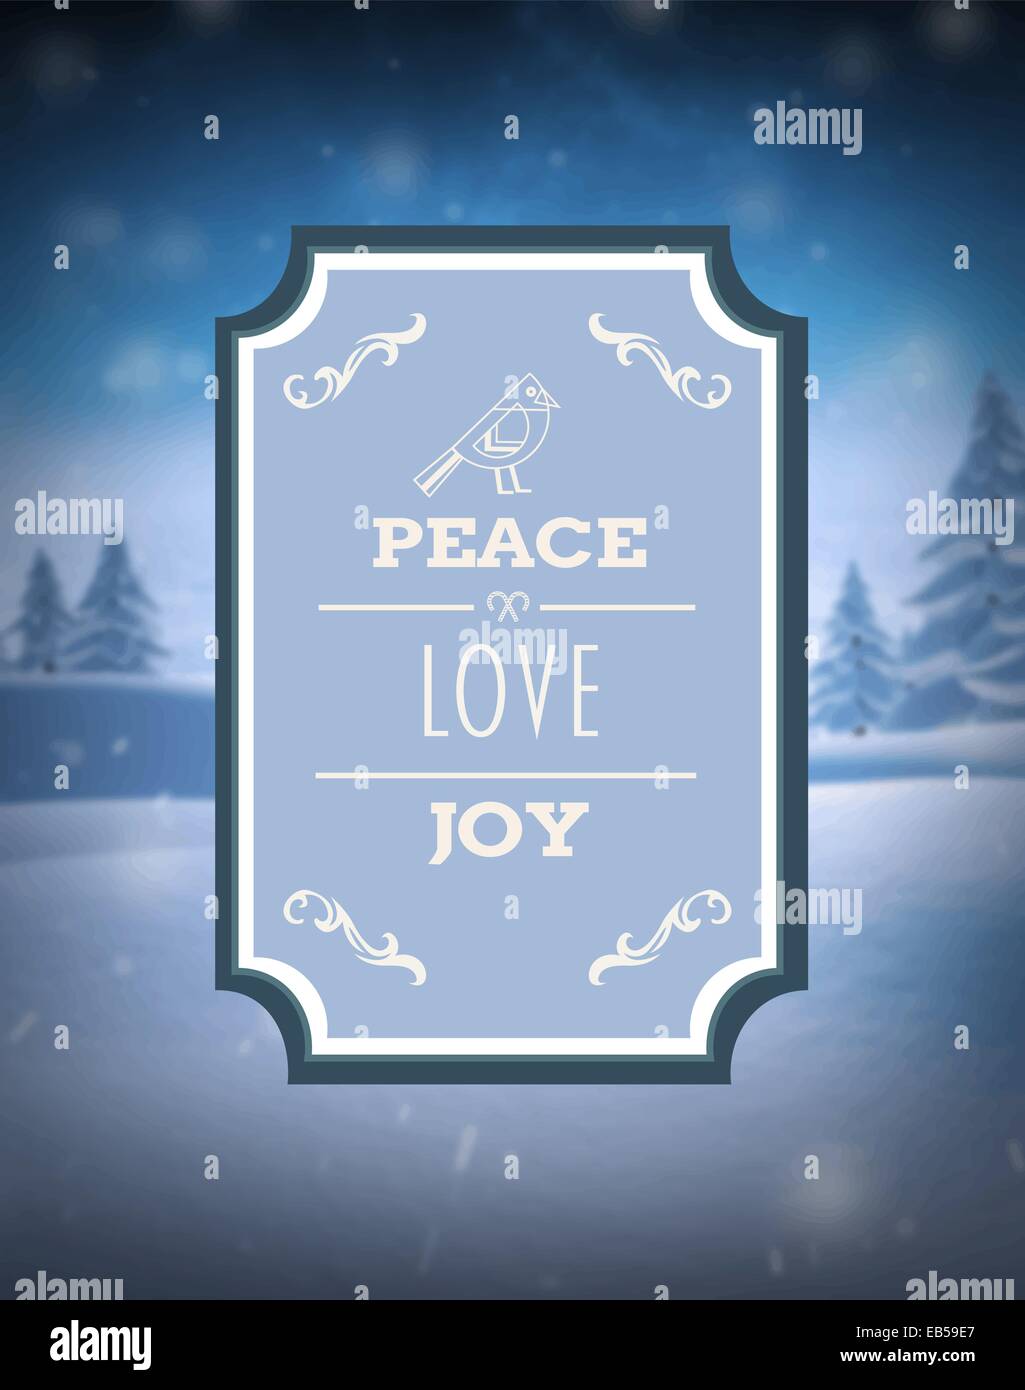 Peace love and joy vector against snowy scene Stock Vector